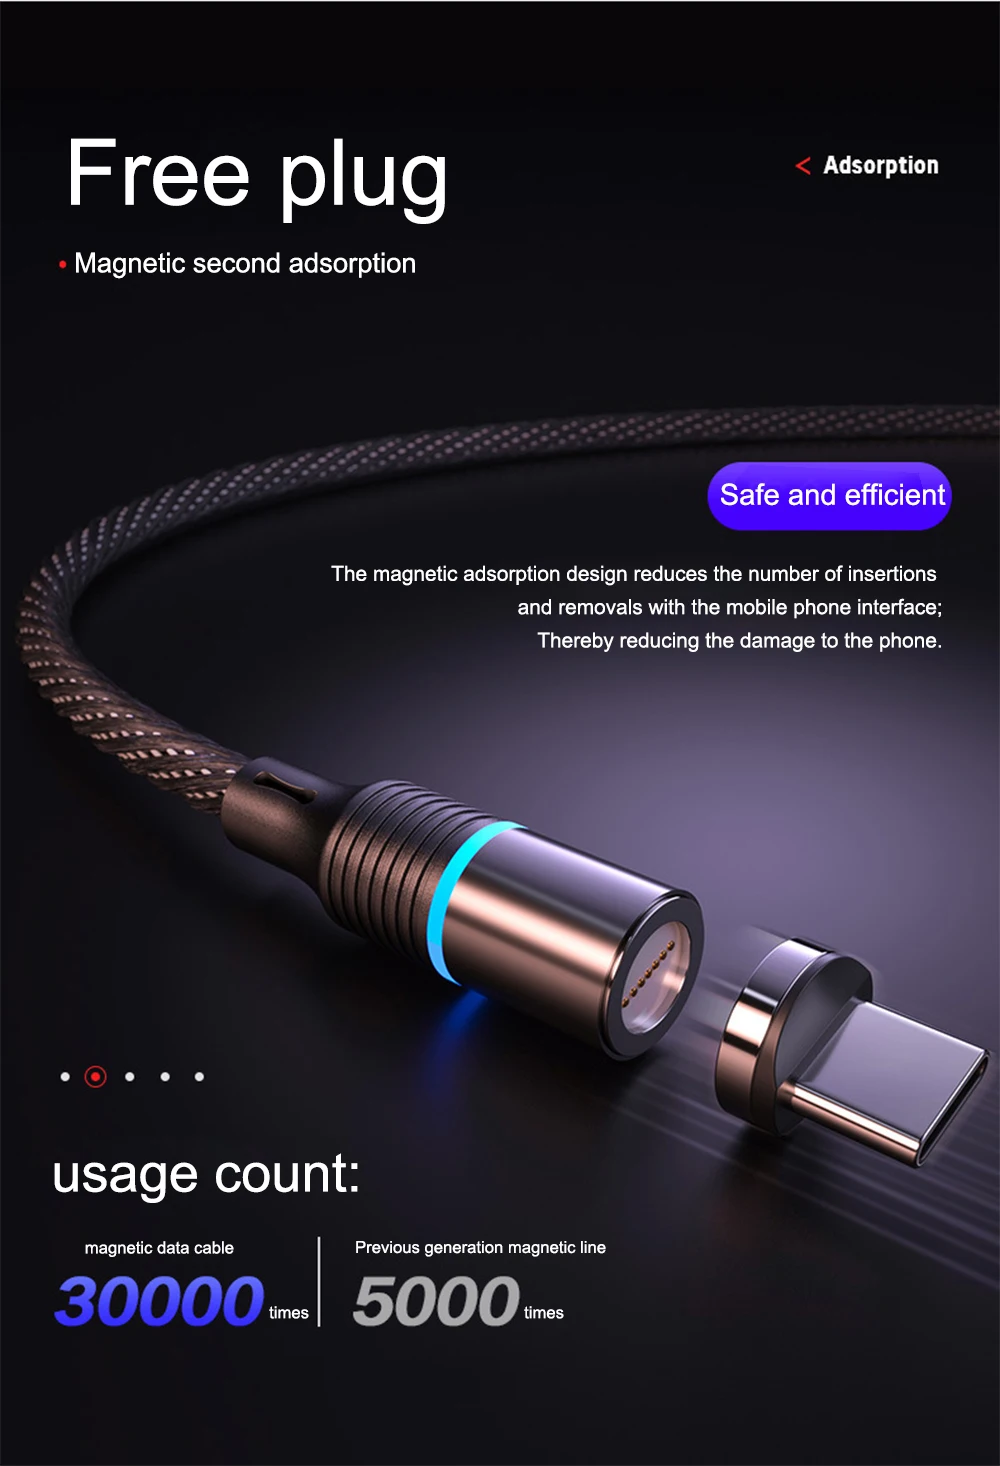 Магнитный кабель магнитная зарядка провод для зарядки кабель USB кабель для iPhone type C Быстрая зарядка данных Быстрая зарядка для huawei Xiaomi LG магнитное зарядное устройство все мобильные телефоны